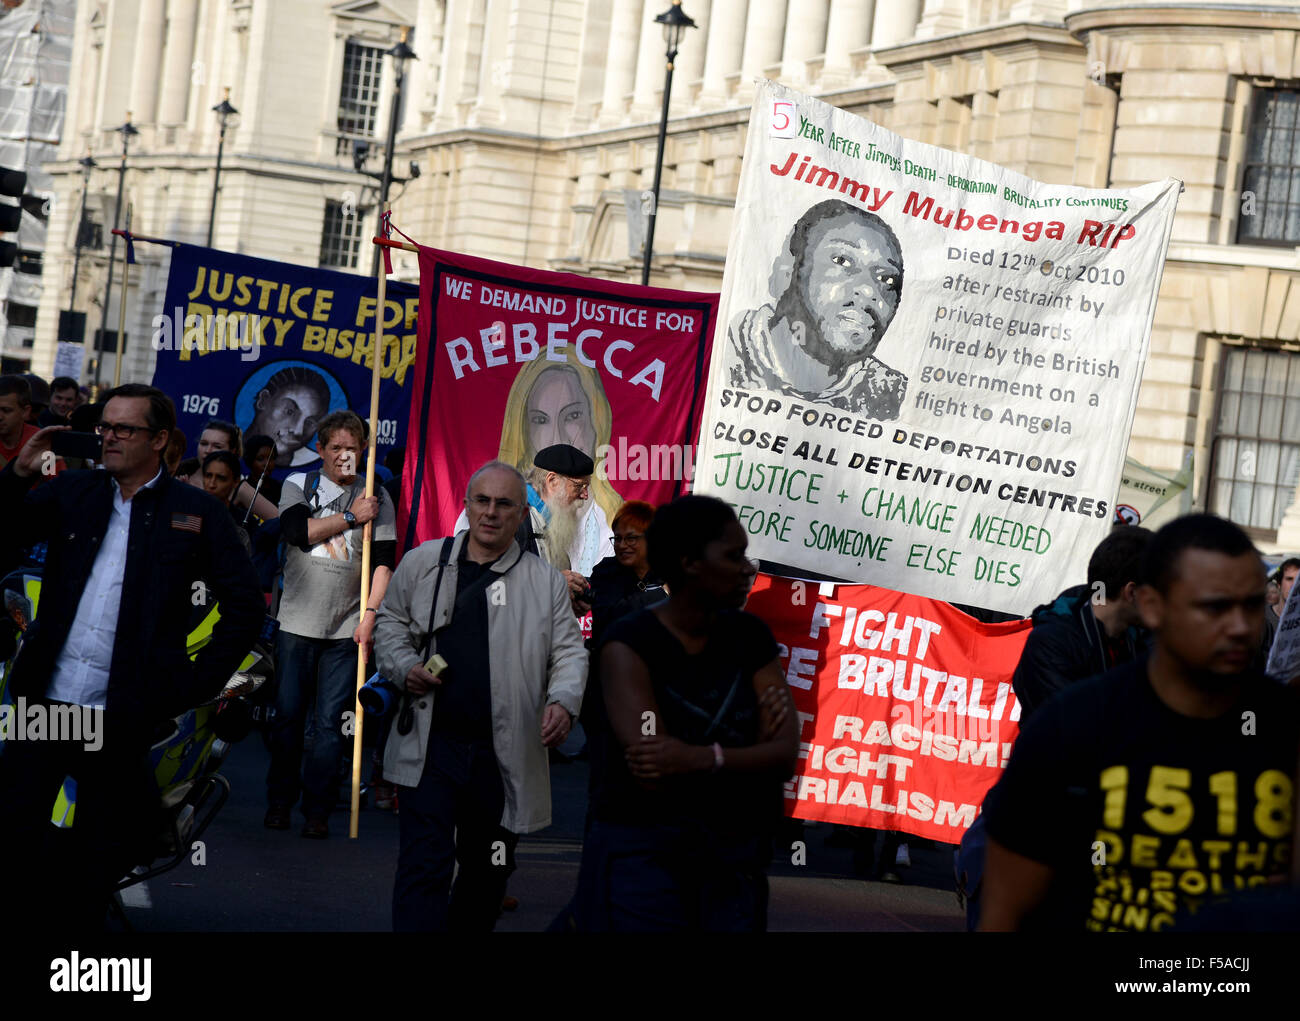 Campagne des familles et amis, plus d'un décès en garde à vue, de protestation à Downing Street, montrant Jimmy Mubenga, Rebecca et Ricky évêque bannières, Londres, Angleterre, Royaume-Uni Banque D'Images